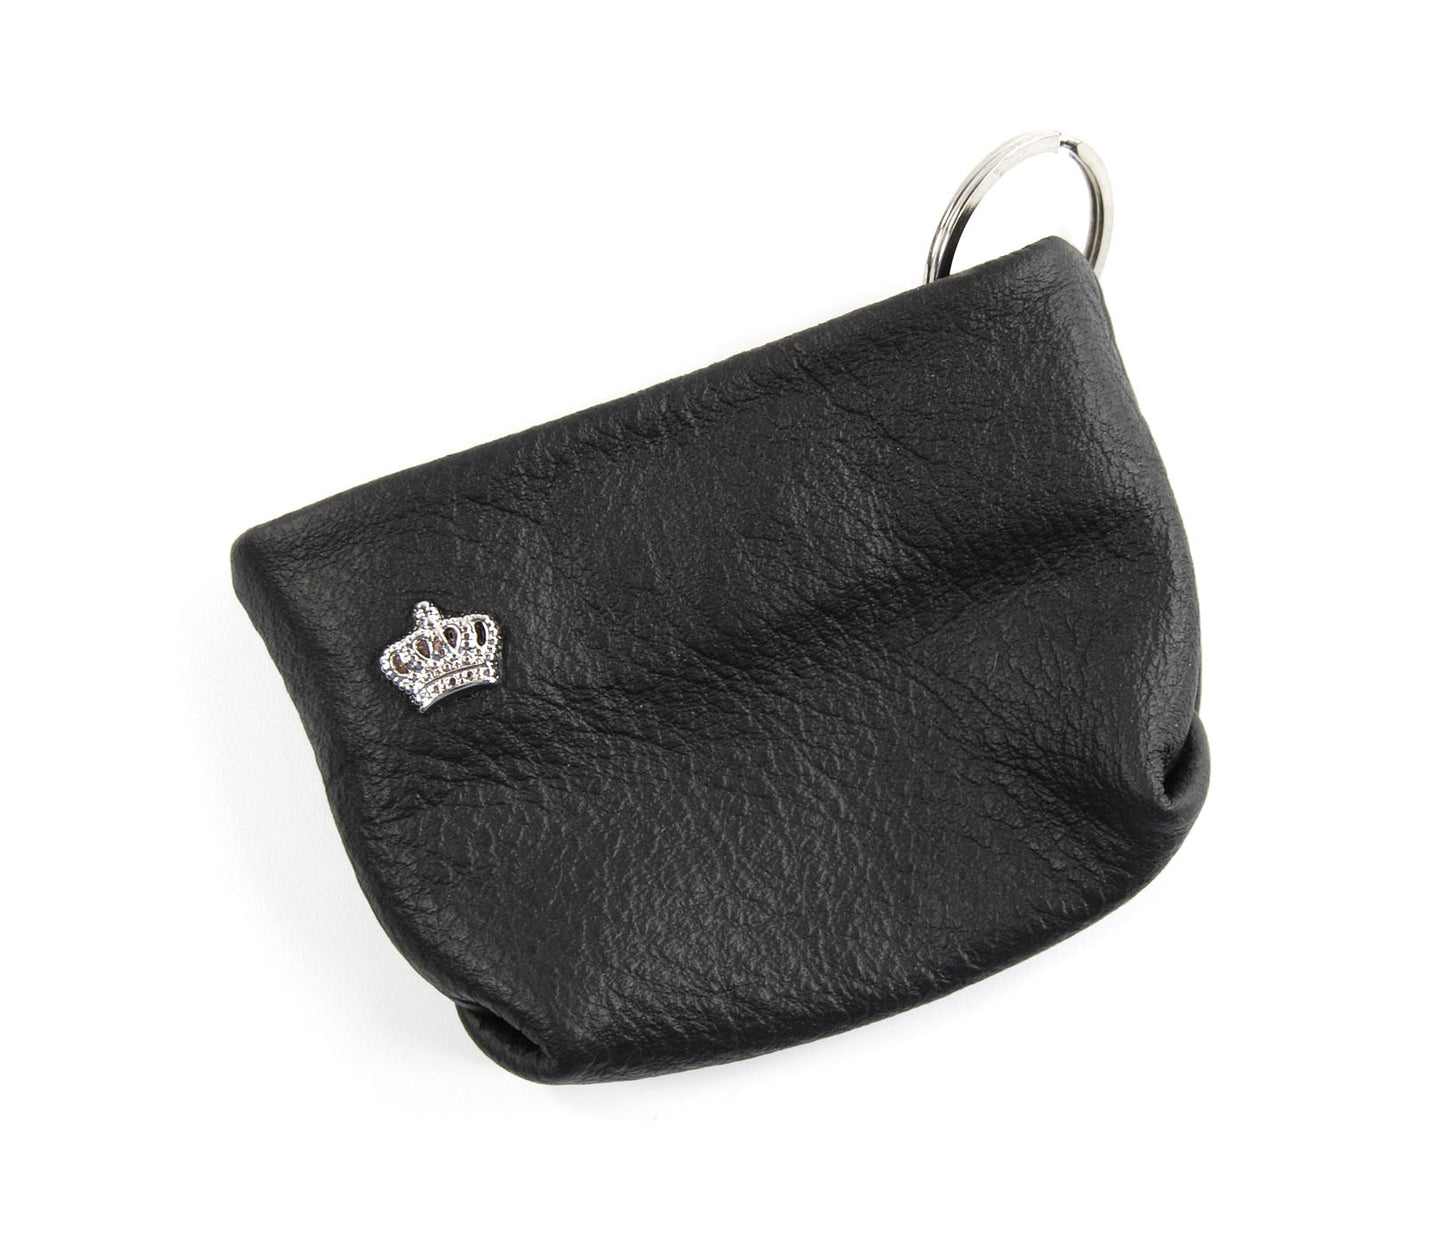 KvK Handcrafted Bag Holder Crown - walking bag